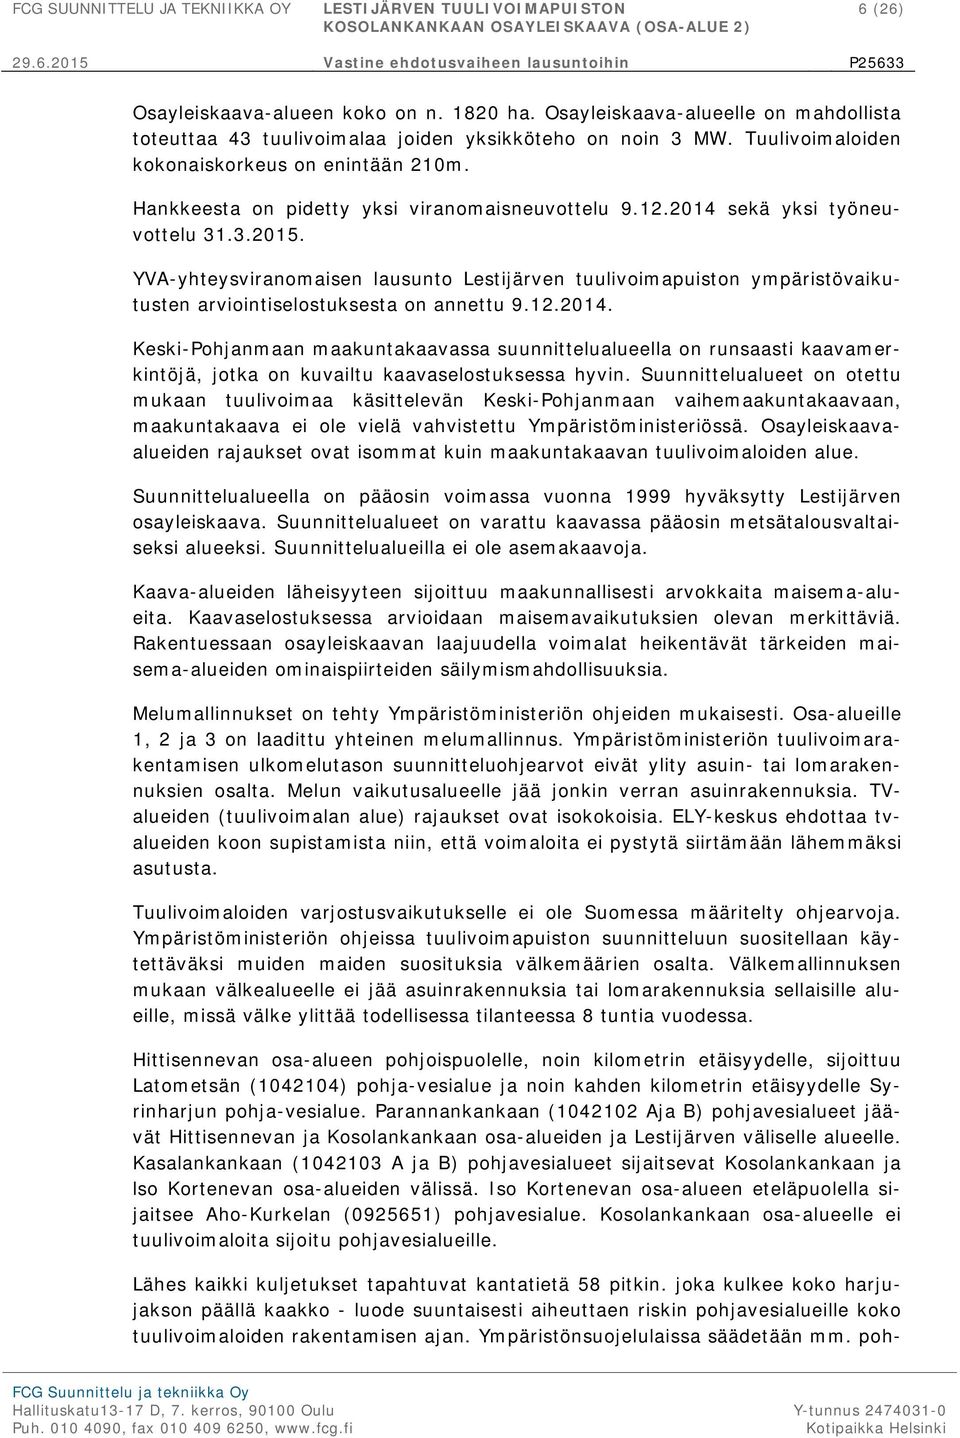 YVA-yhteysviranomaisen lausunto Lestijärven tuulivoimapuiston ympäristövaikutusten arviointiselostuksesta on annettu 9.12.2014.